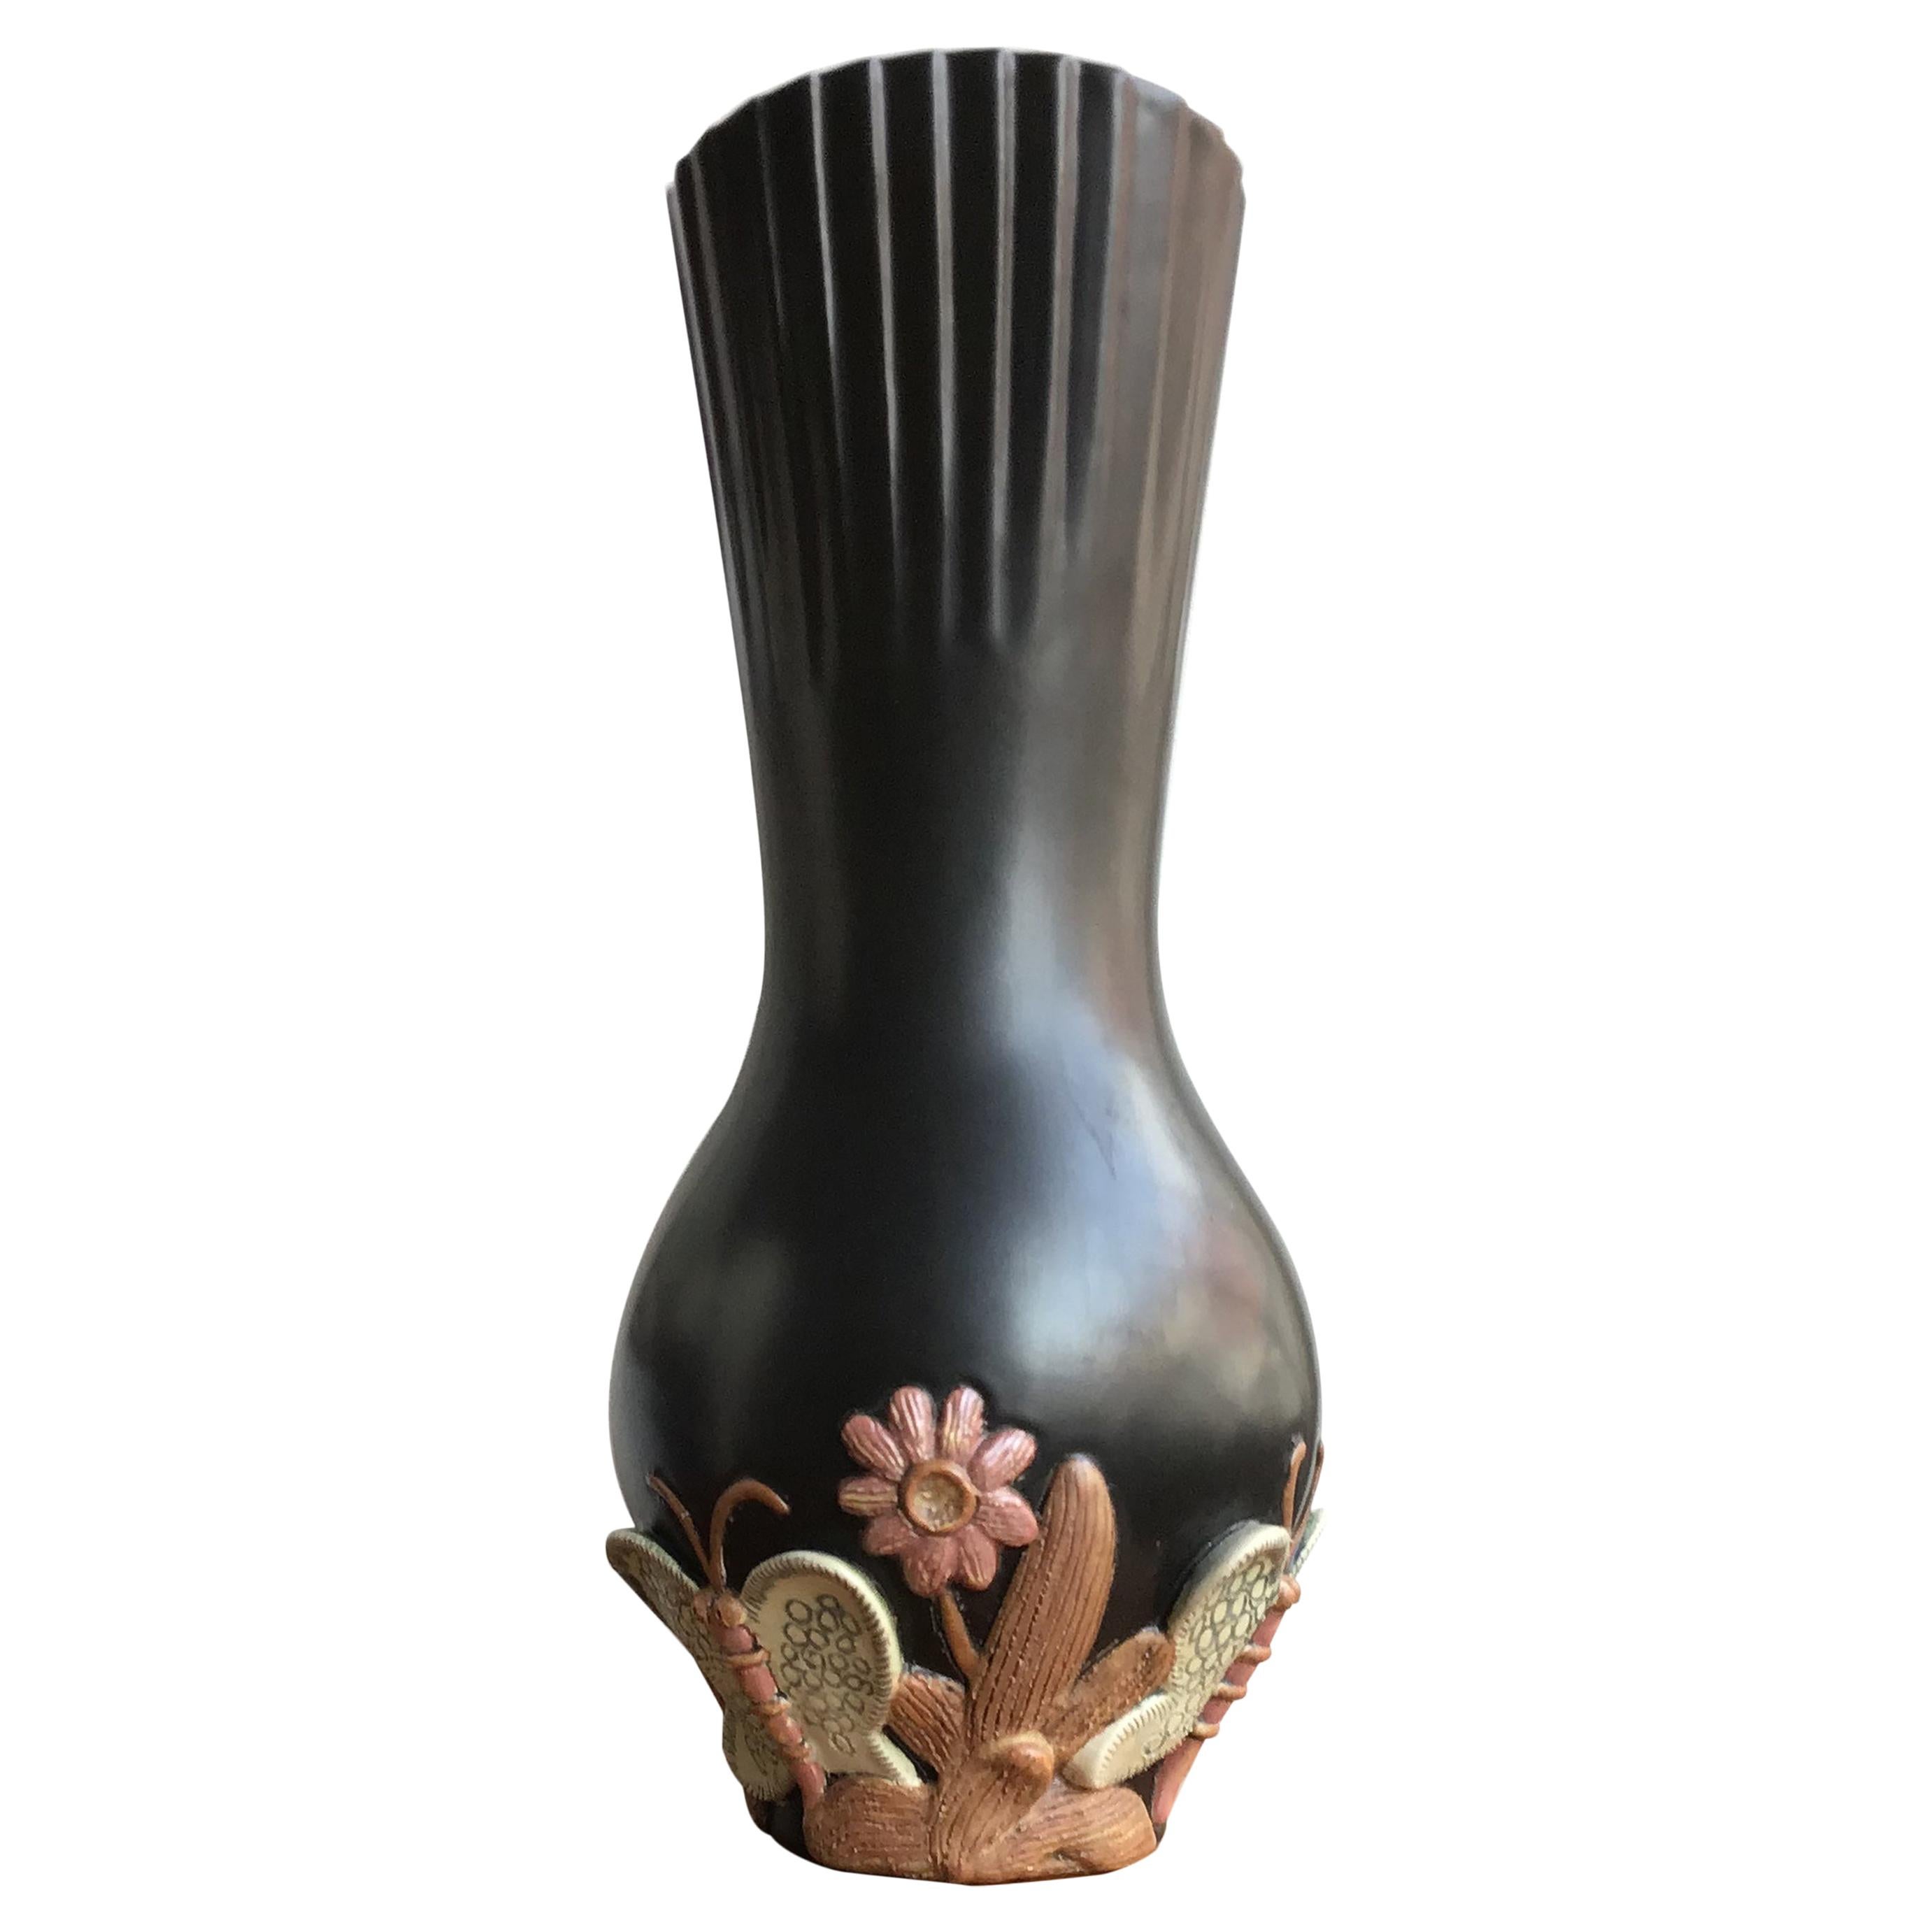 Richard Ginori Giovanni Gariboldi Ceramic Vase, 1950, Italy